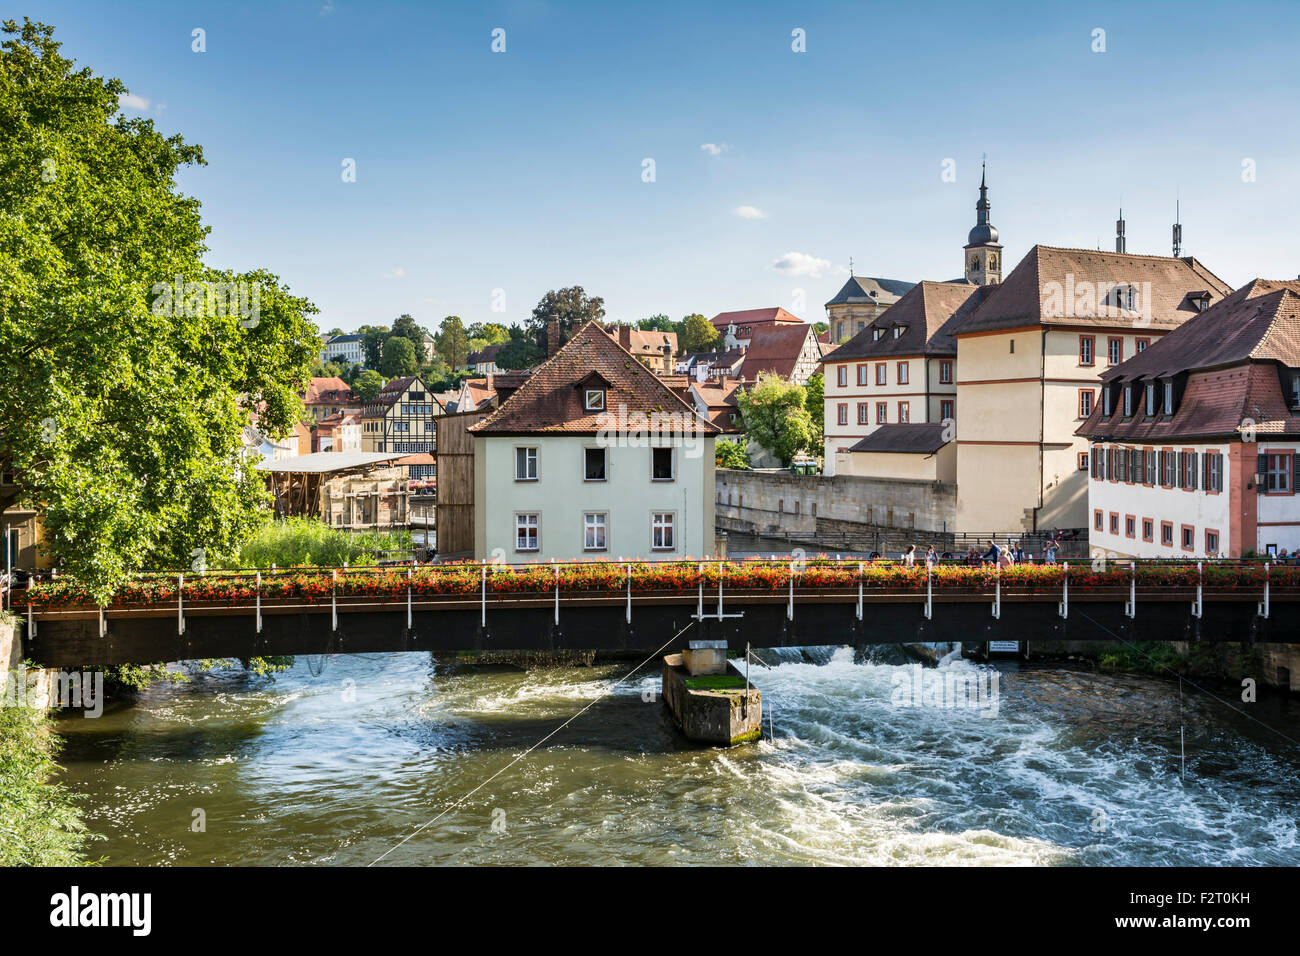 BAMBERG, Germania - 4 settembre: turisti su un ponte sopra il fiume Regnitz a Bamberg in Germania il 4 settembre 2015. Foto Stock